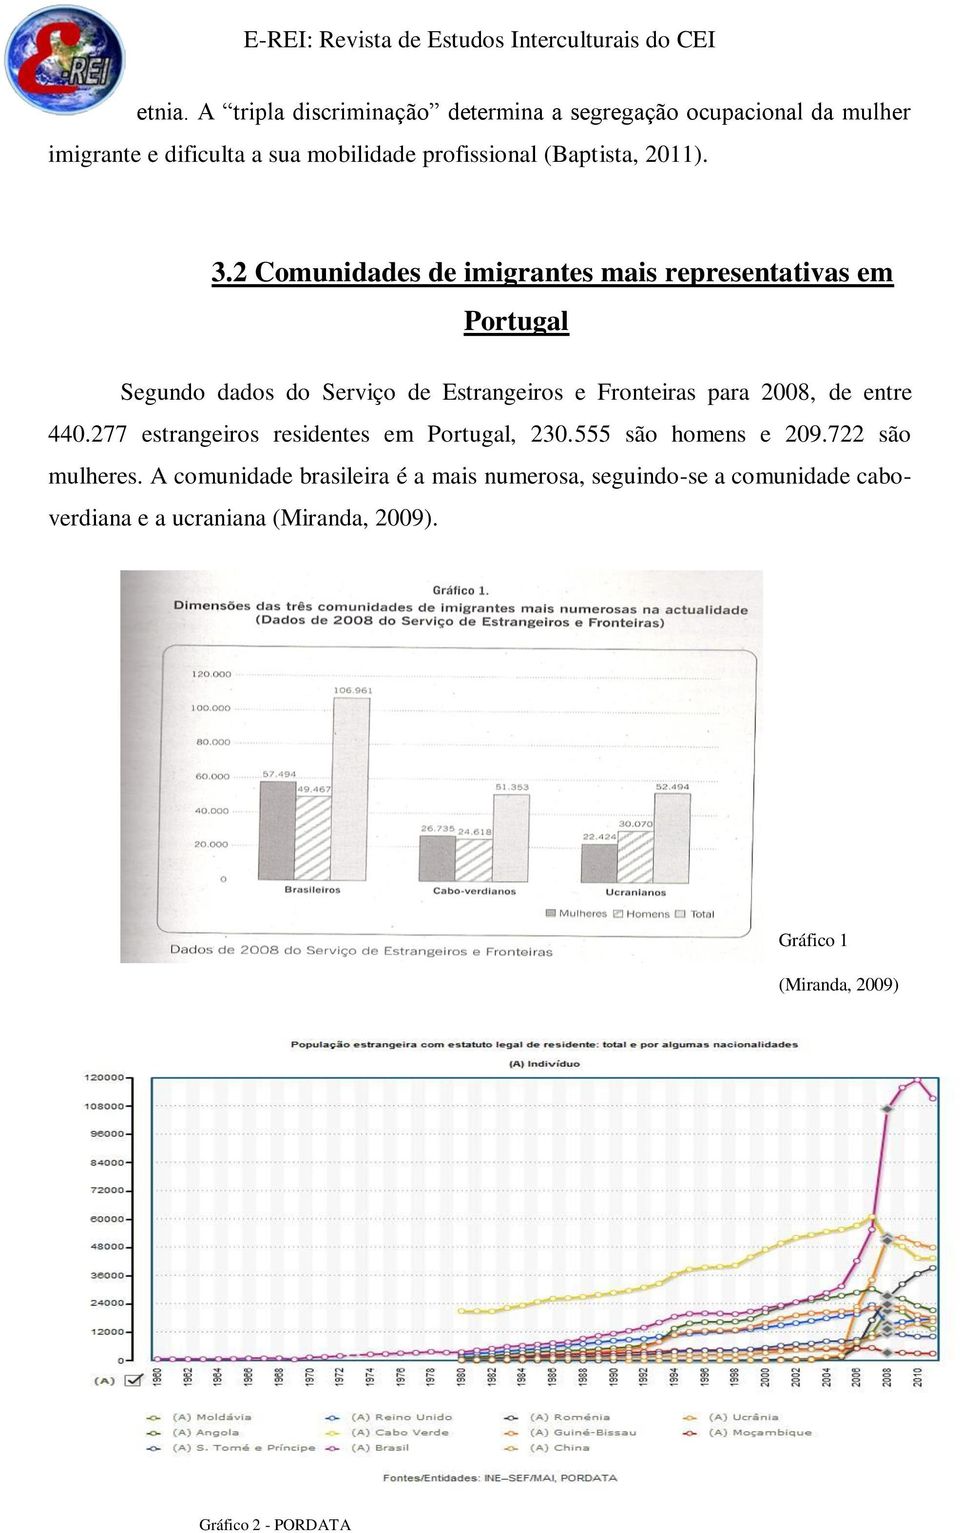 2 Comunidades de imigrantes mais representativas em Portugal Segundo dados do Serviço de Estrangeiros e Fronteiras para 2008, de entre 440.